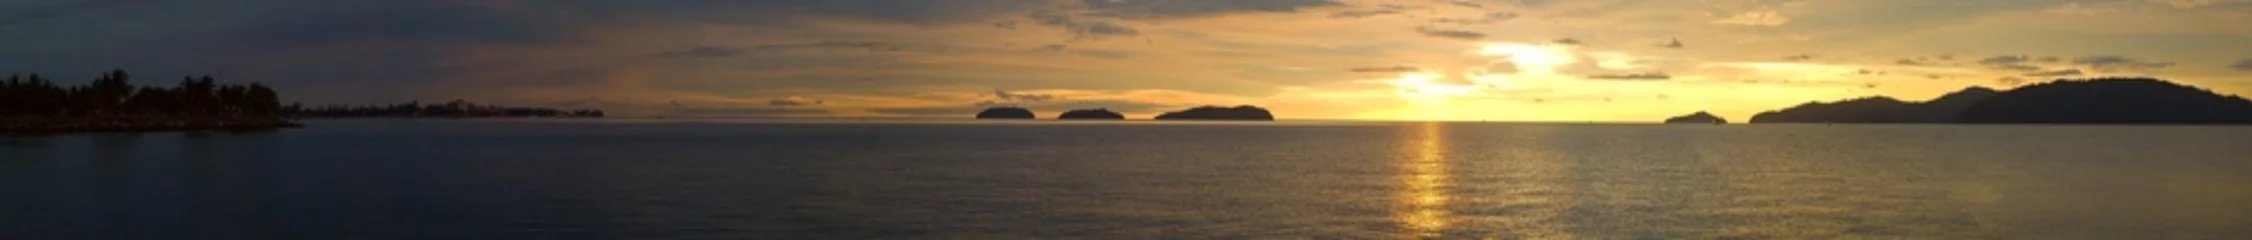 Poster Meer / Ozean Ein ultraweiter Panoramablick auf einen goldenen Sonnenuntergangsozean